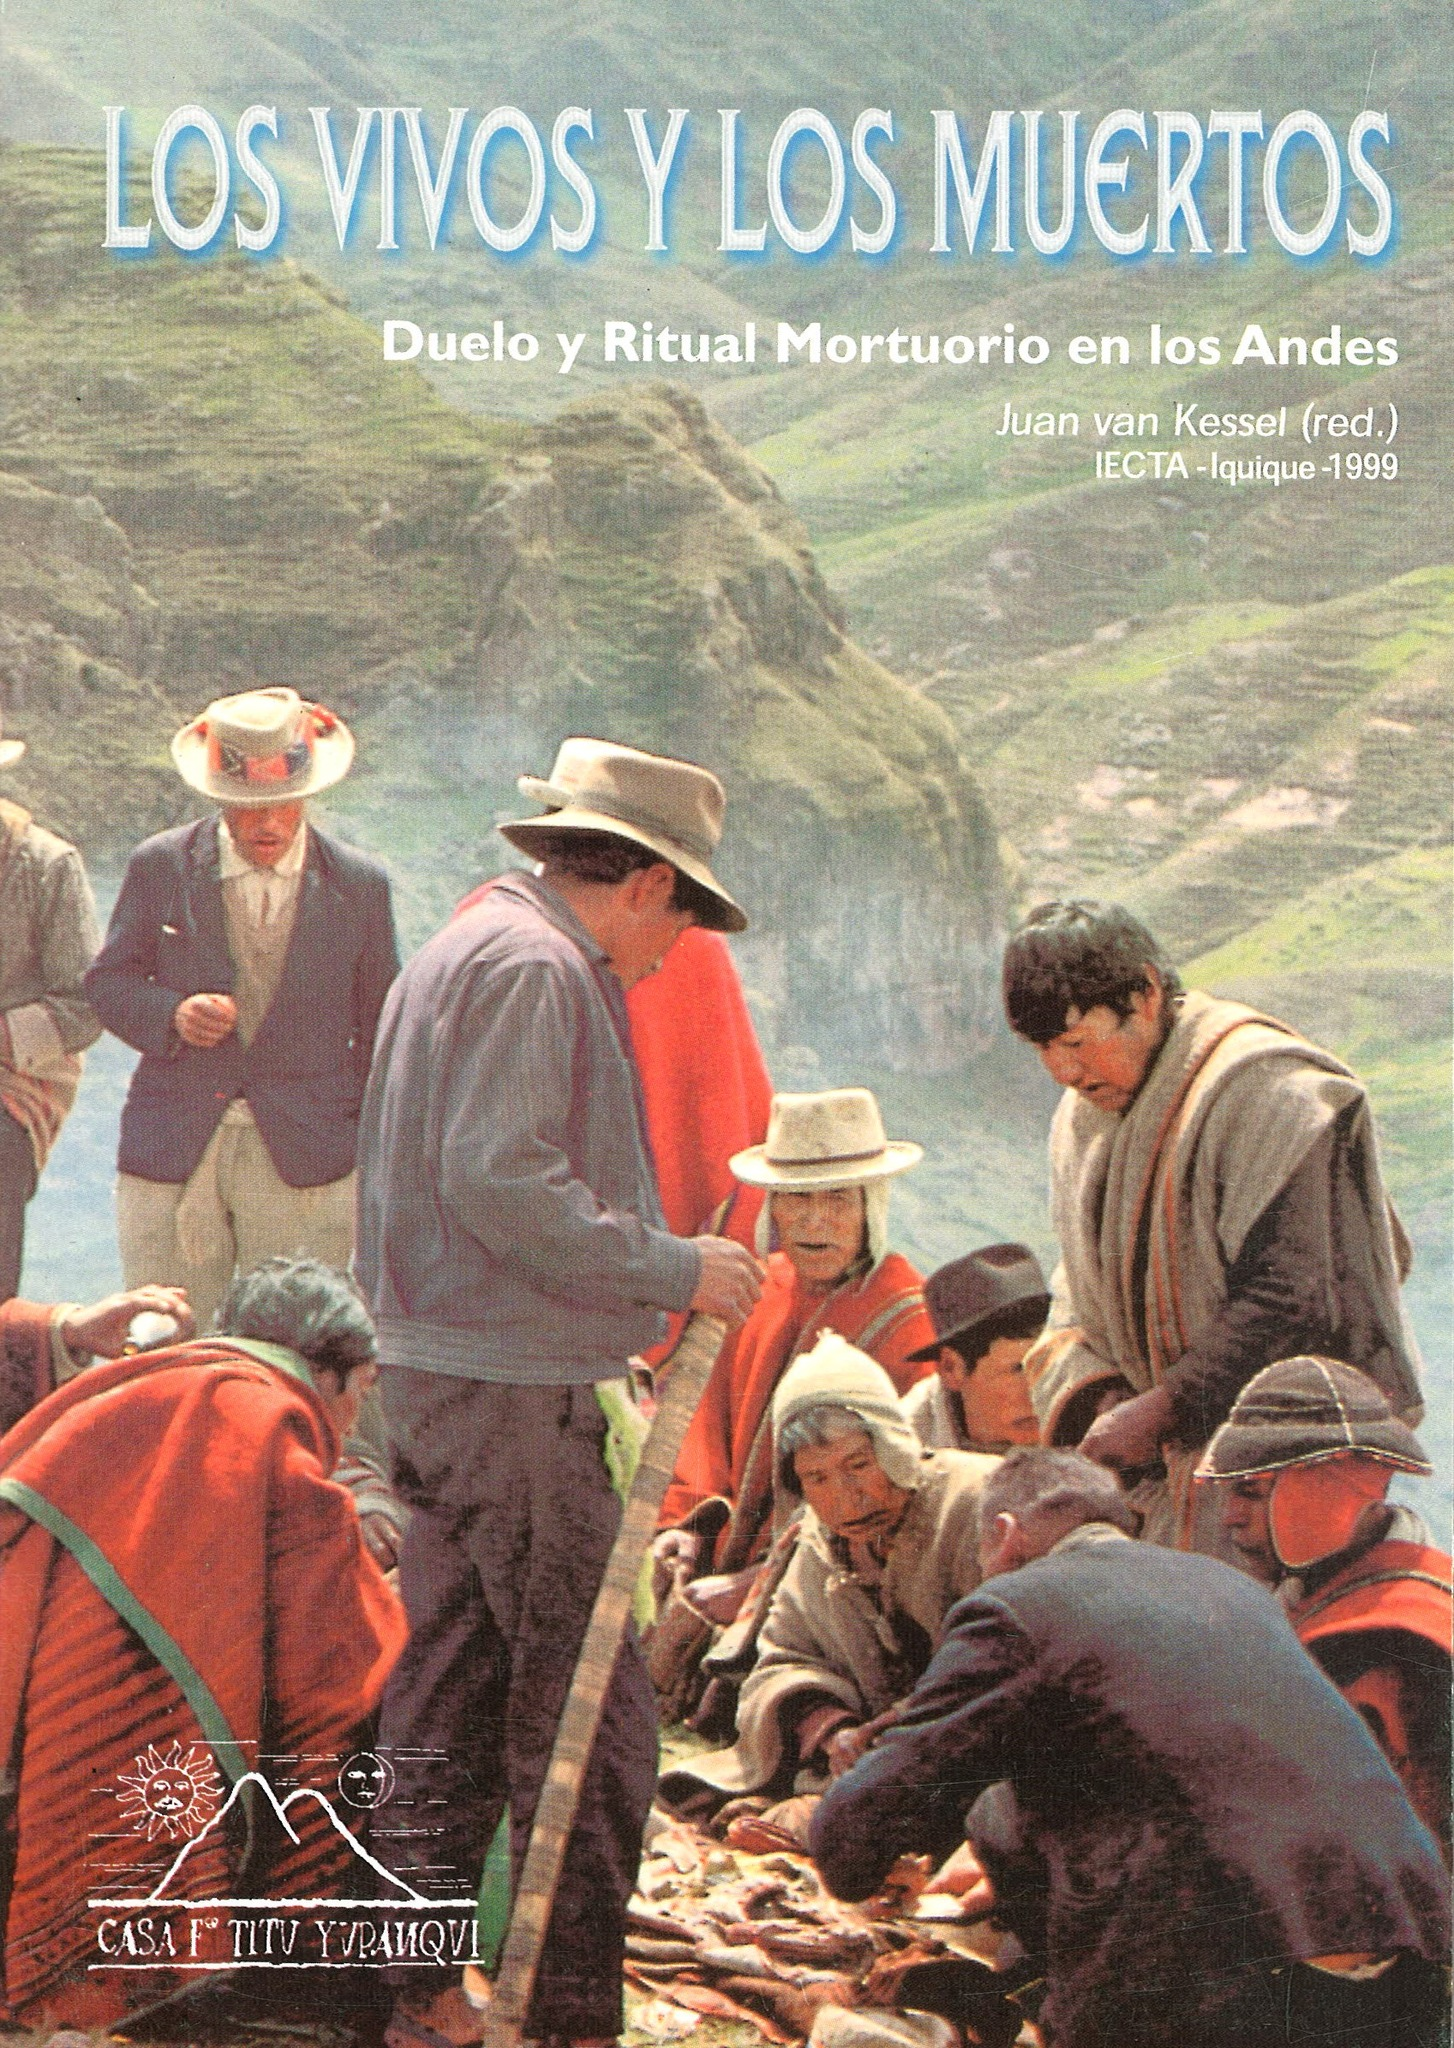 Los Andes un sentimiento: Historial entre Talleres RE y Los Andes